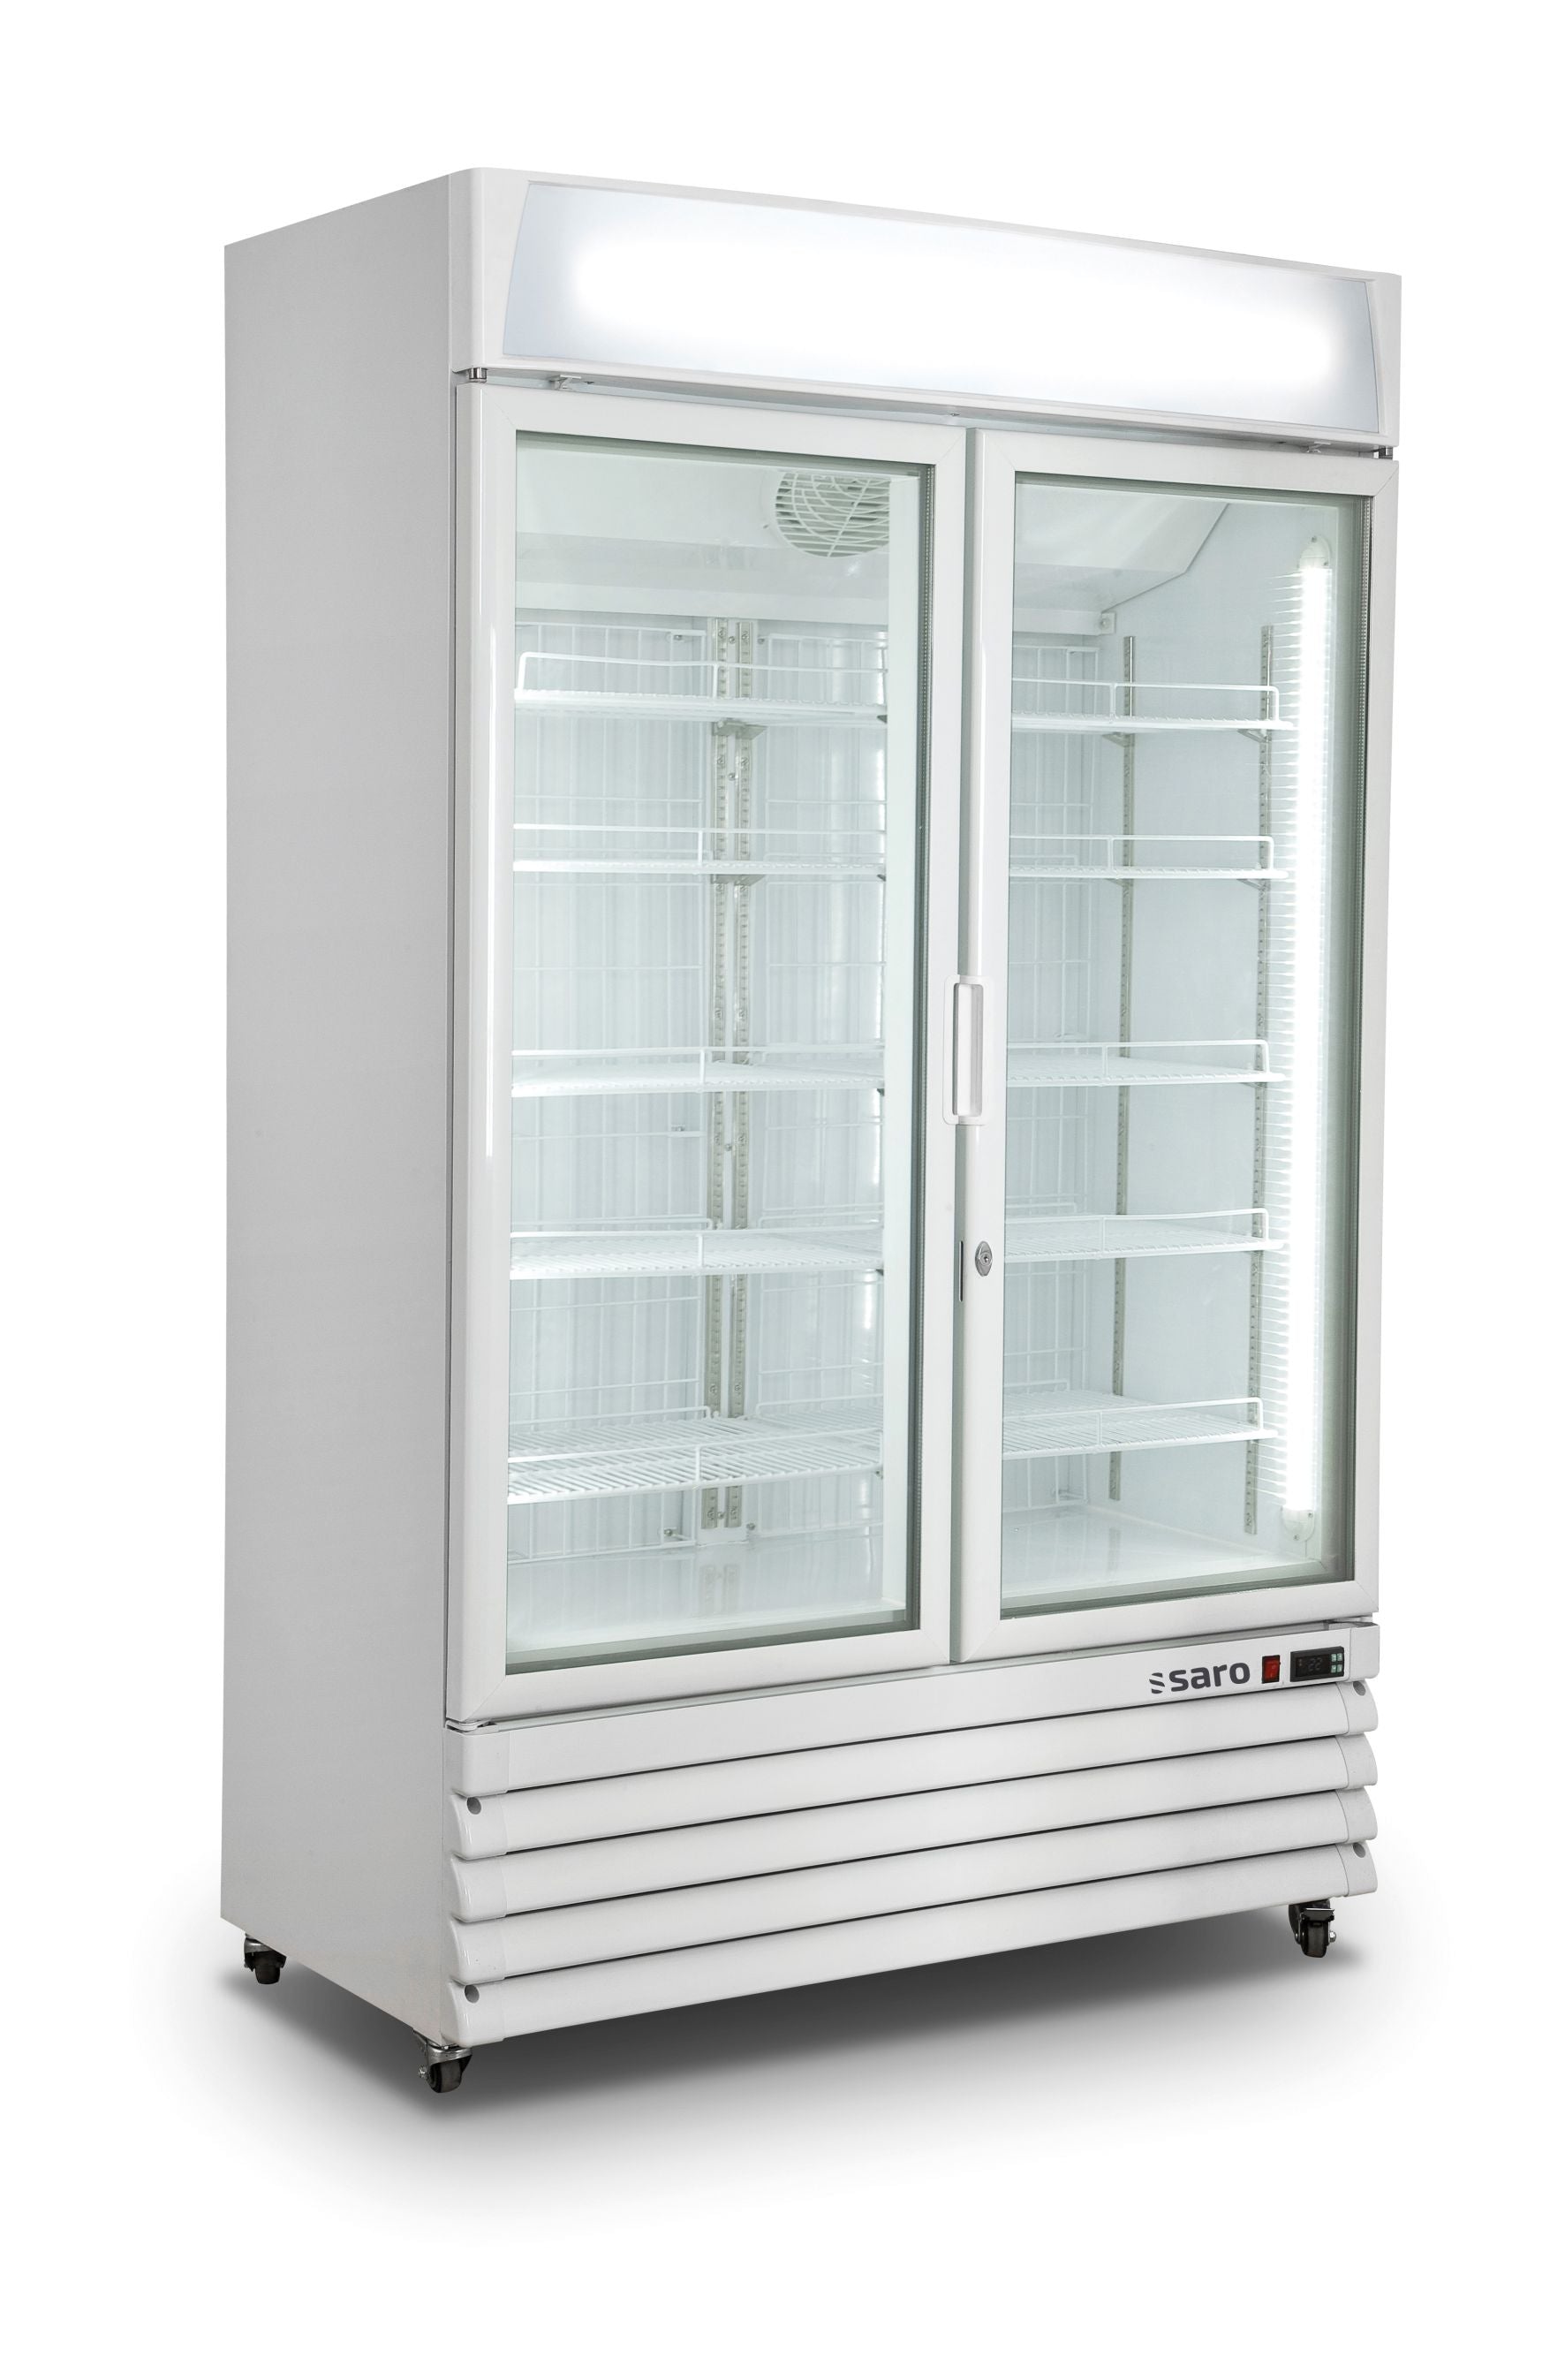 Se SARO Displayfryser med 2 glaslåger, model D 800 - wh hos Maxigastro.com